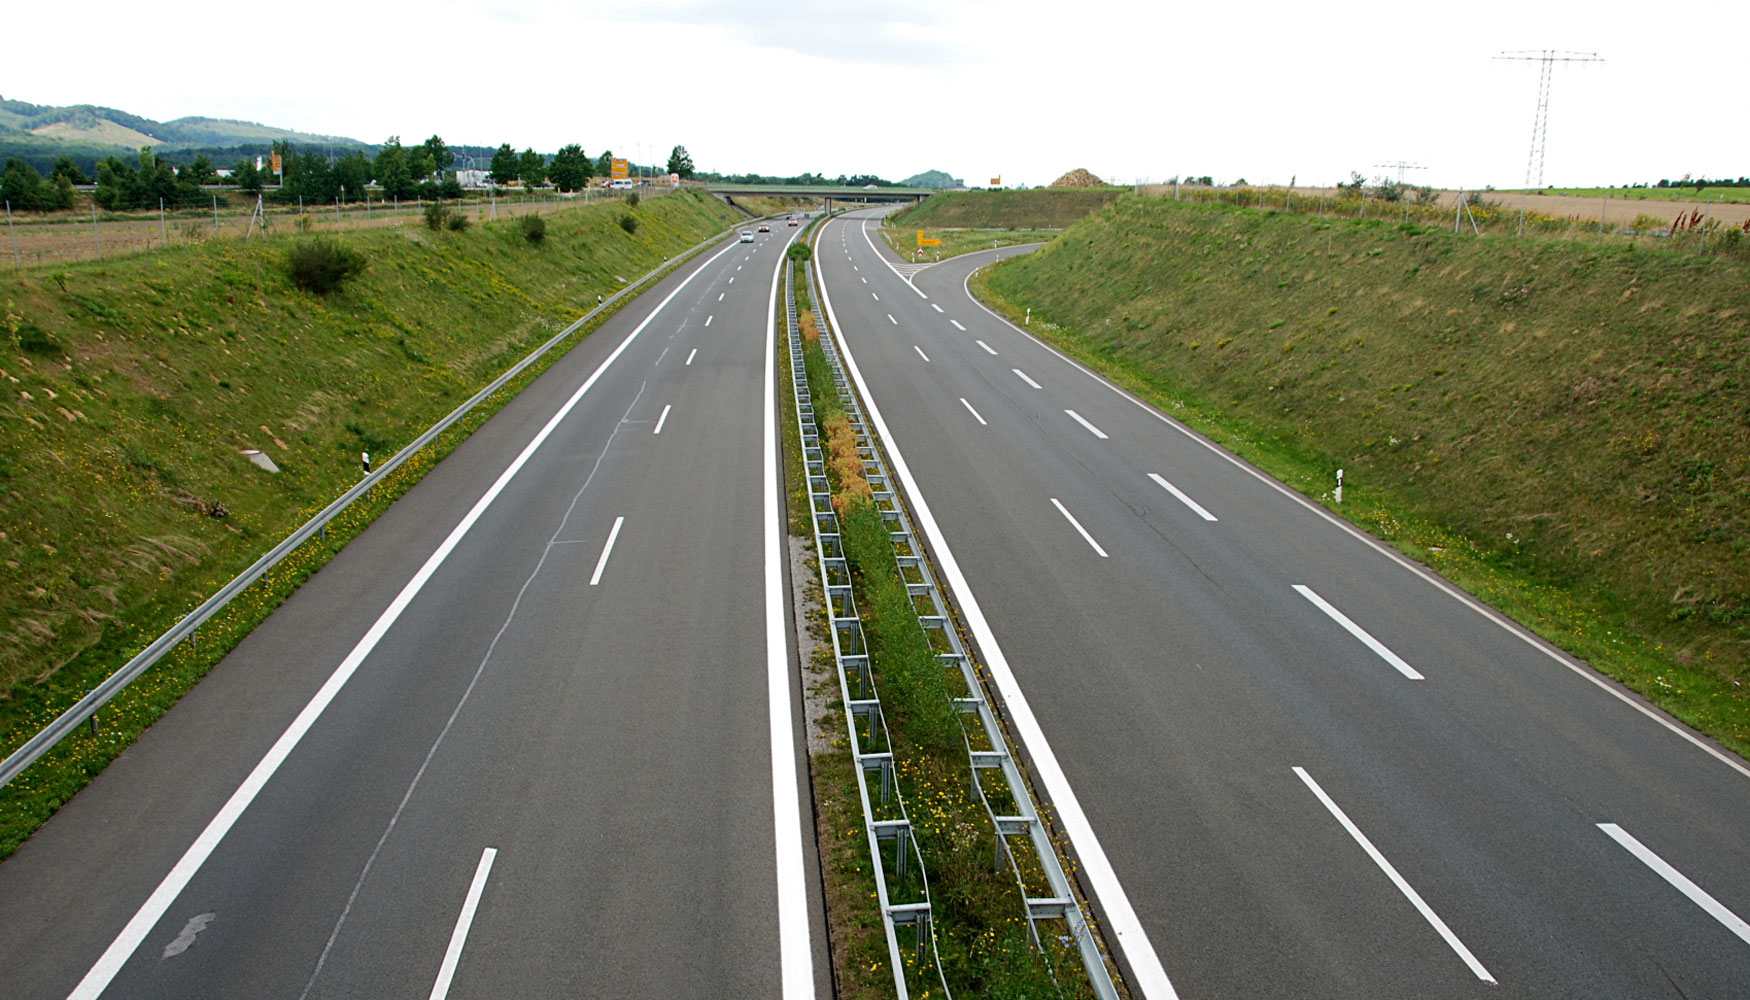 El nuevo plan actuar sobre ms de 2.000 km de carreteras en los prximos 4 aos y en 20 grandes corredores